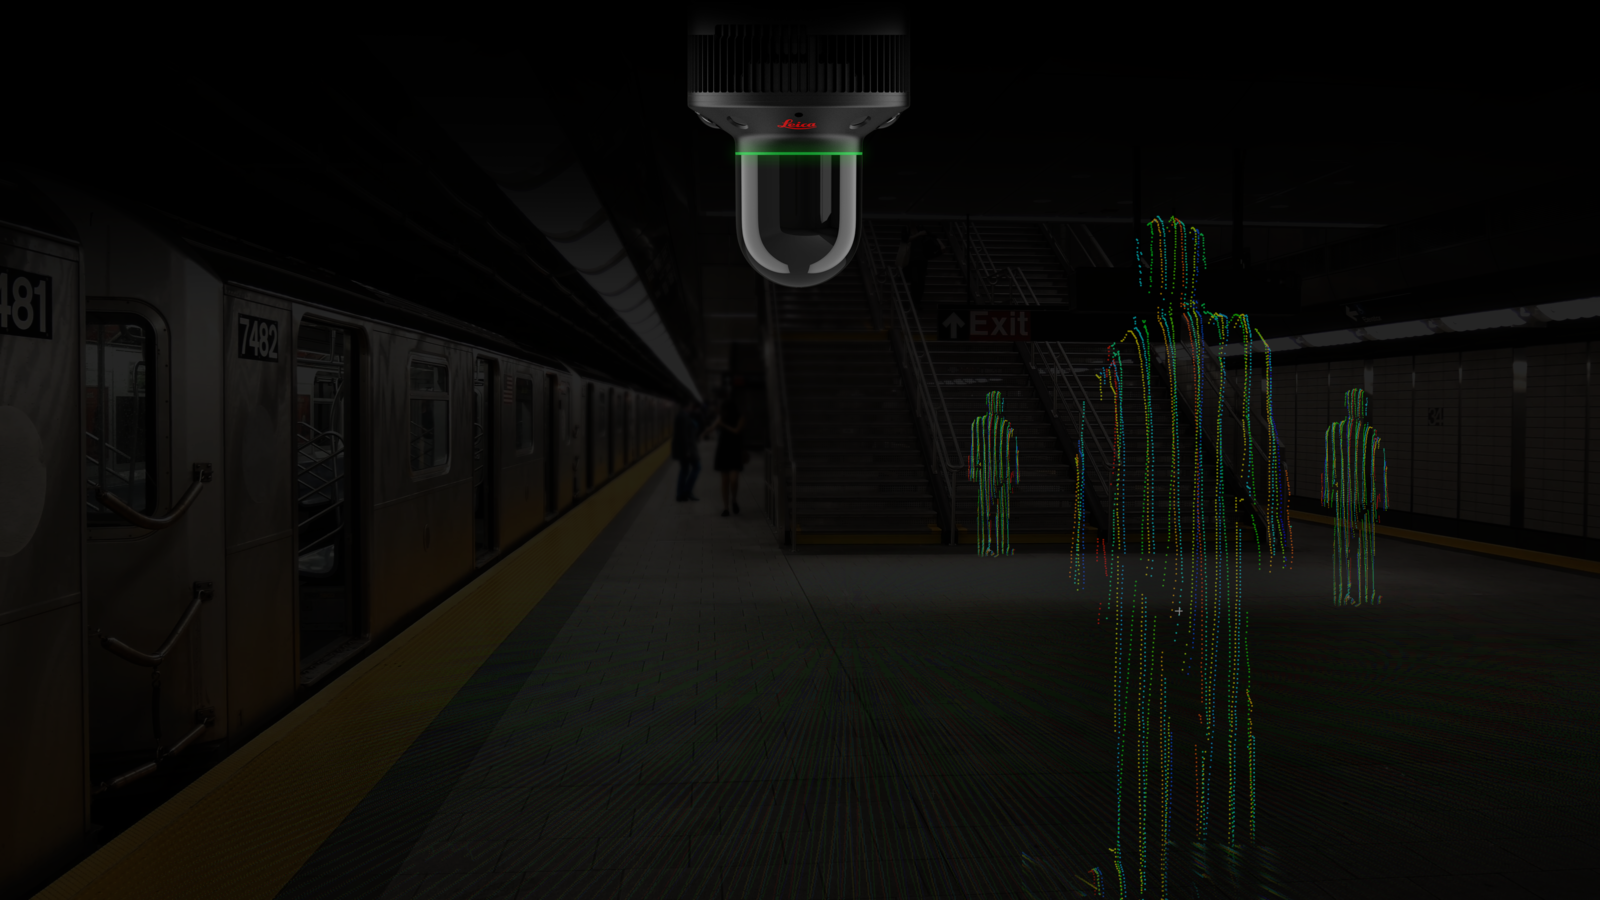 Le Leica BLK247 numérise l'intérieur d'une station de métro